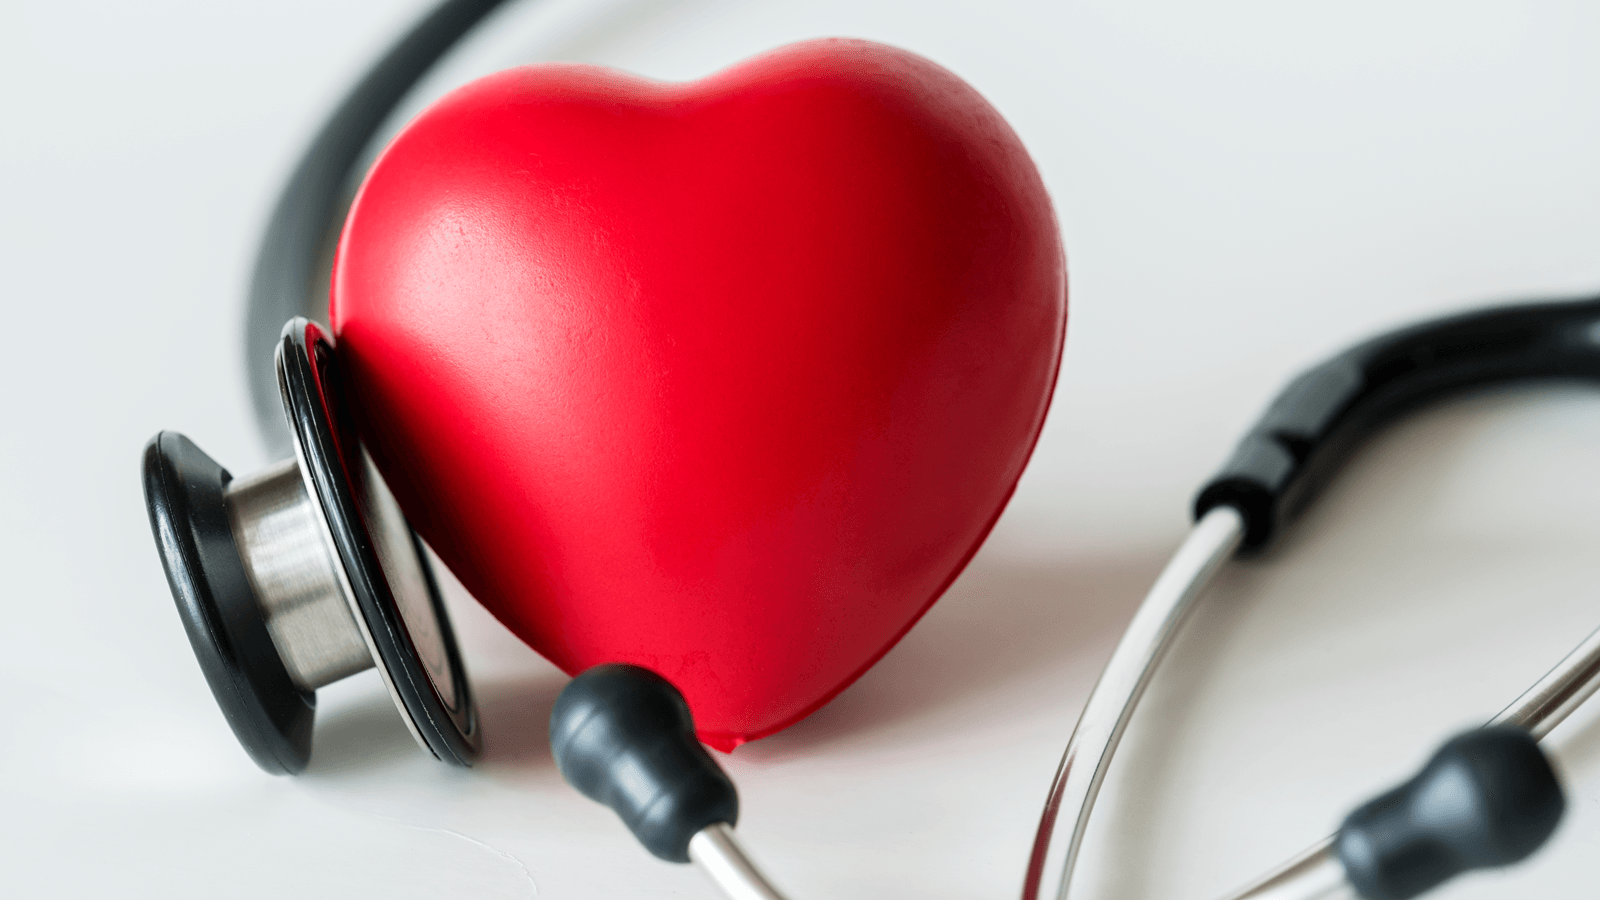 Hở van tim thường được ví là “sát thủ” khó lường bởi bệnh không chỉ do bẩm sinh mà còn có thể mắc phải sau khi bị thấp khớp, thoái hóa... Nhưng dù nguy hiểm đến đâu, sự chủ động tìm hiểu và thăm khám sớm cũng sẽ giúp sức khỏe của bạn tốt lên.